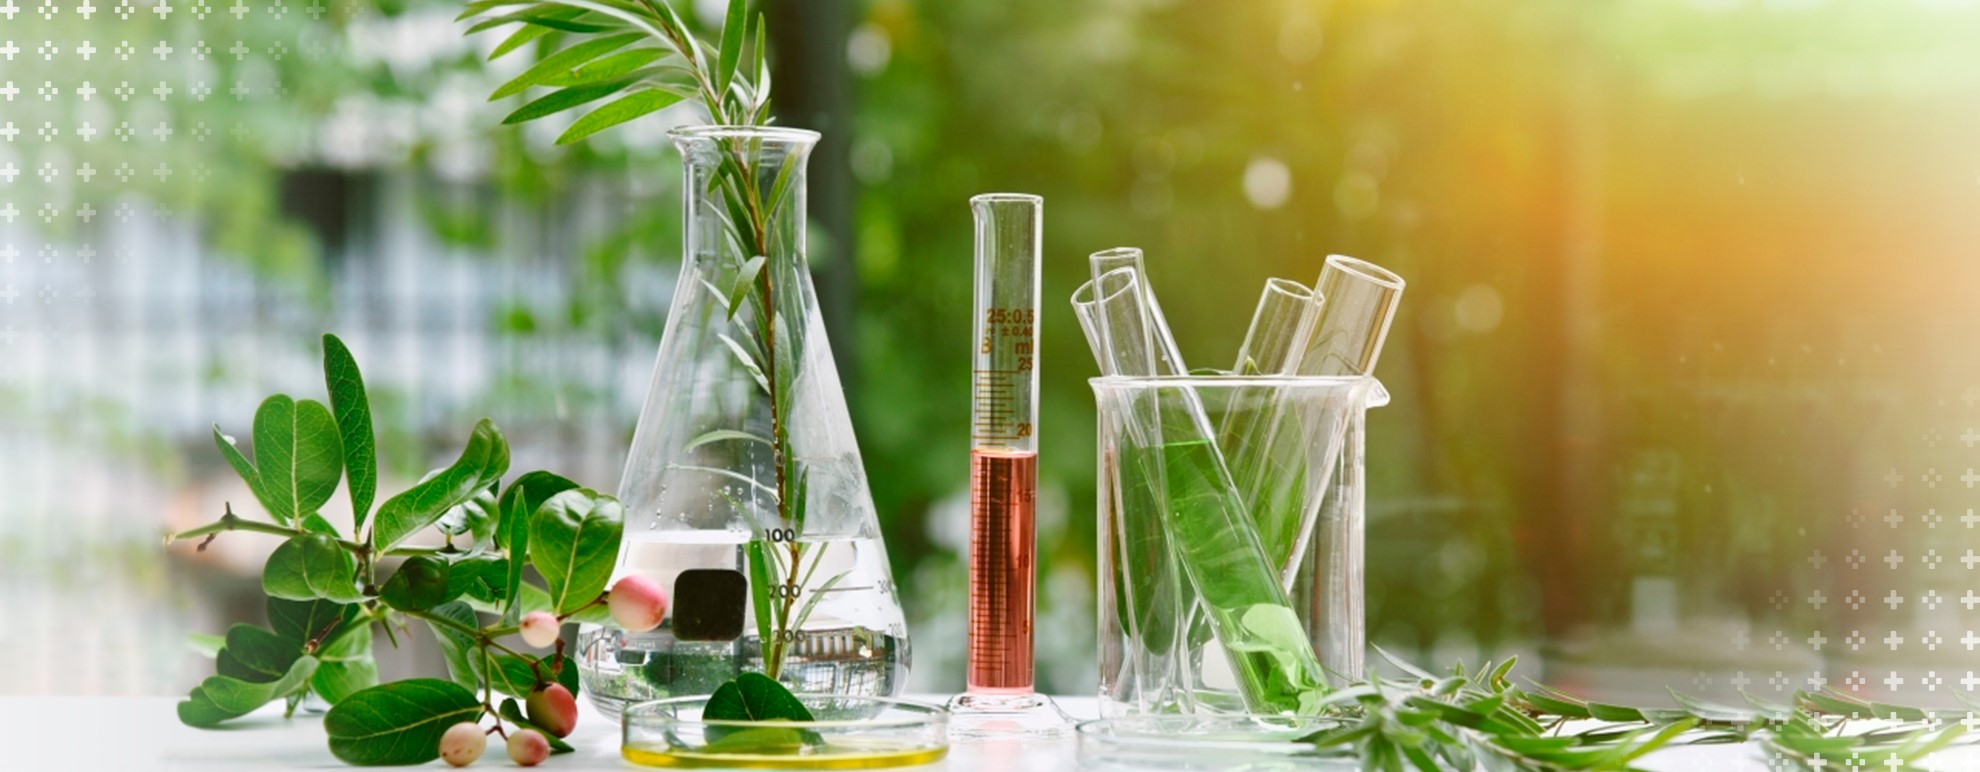 imagem representando a química ambiental - tubos de ensaios e pipetas sobre um fundo verde